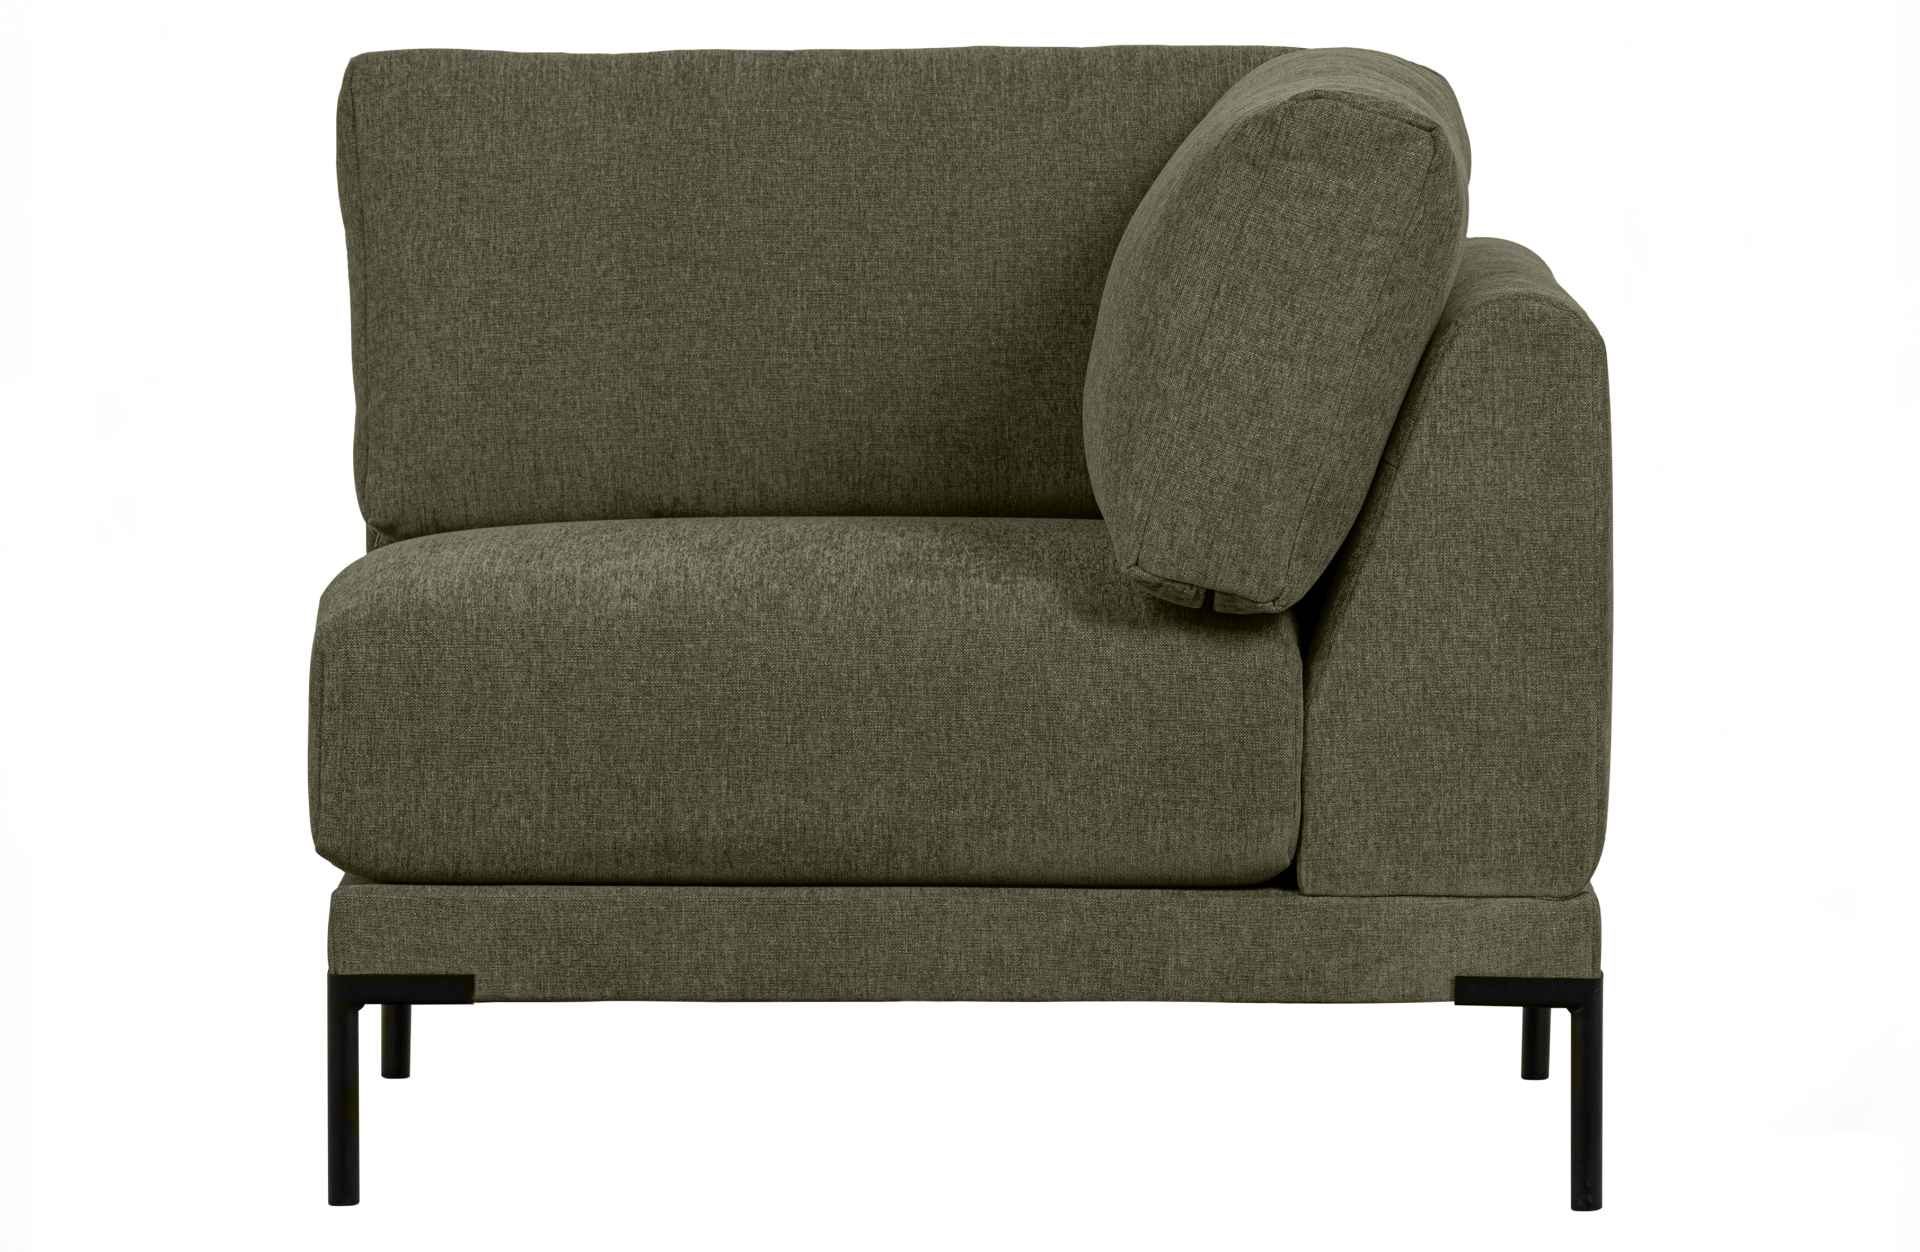 Das Modulsofa Couple Lounge überzeugt mit seinem modernen Design. Das Eck-Element wurde aus Melange Stoff gefertigt, welcher einen einen grünen Farbton besitzen. Das Gestell ist aus Metall und hat eine schwarze Farbe. Das Element hat eine Länge von 100 cm